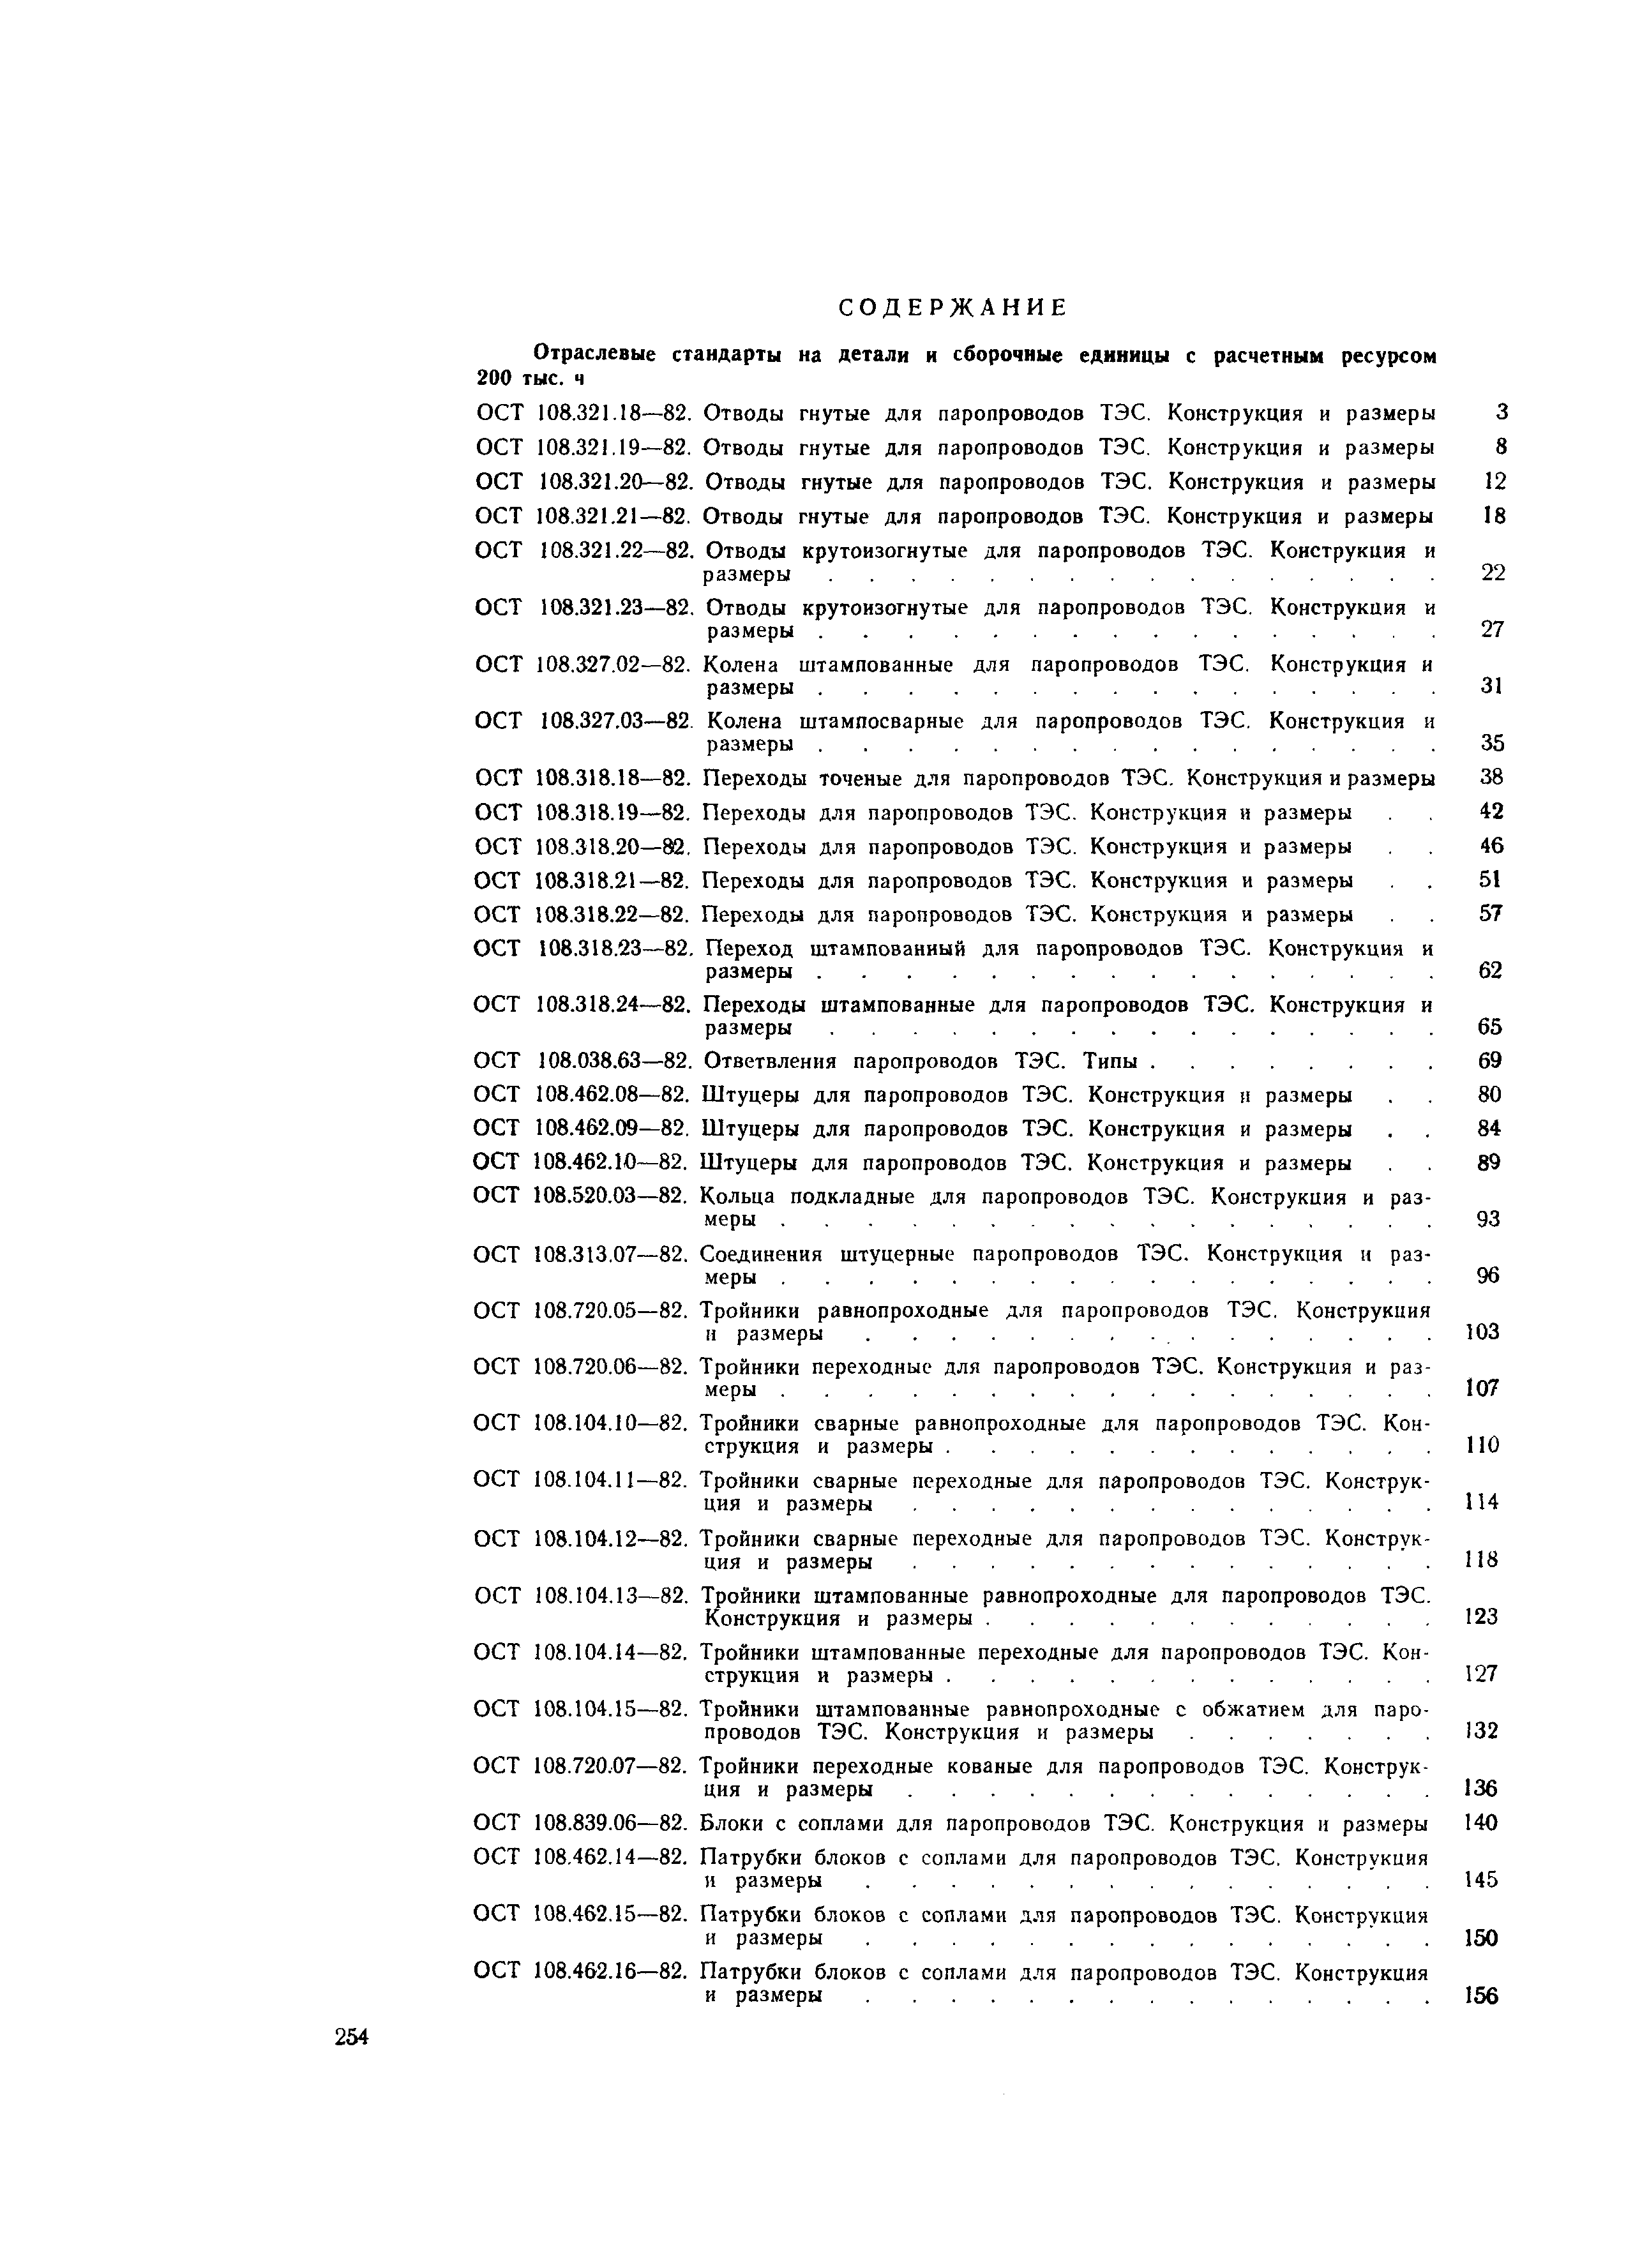 ОСТ 108.104.13-82